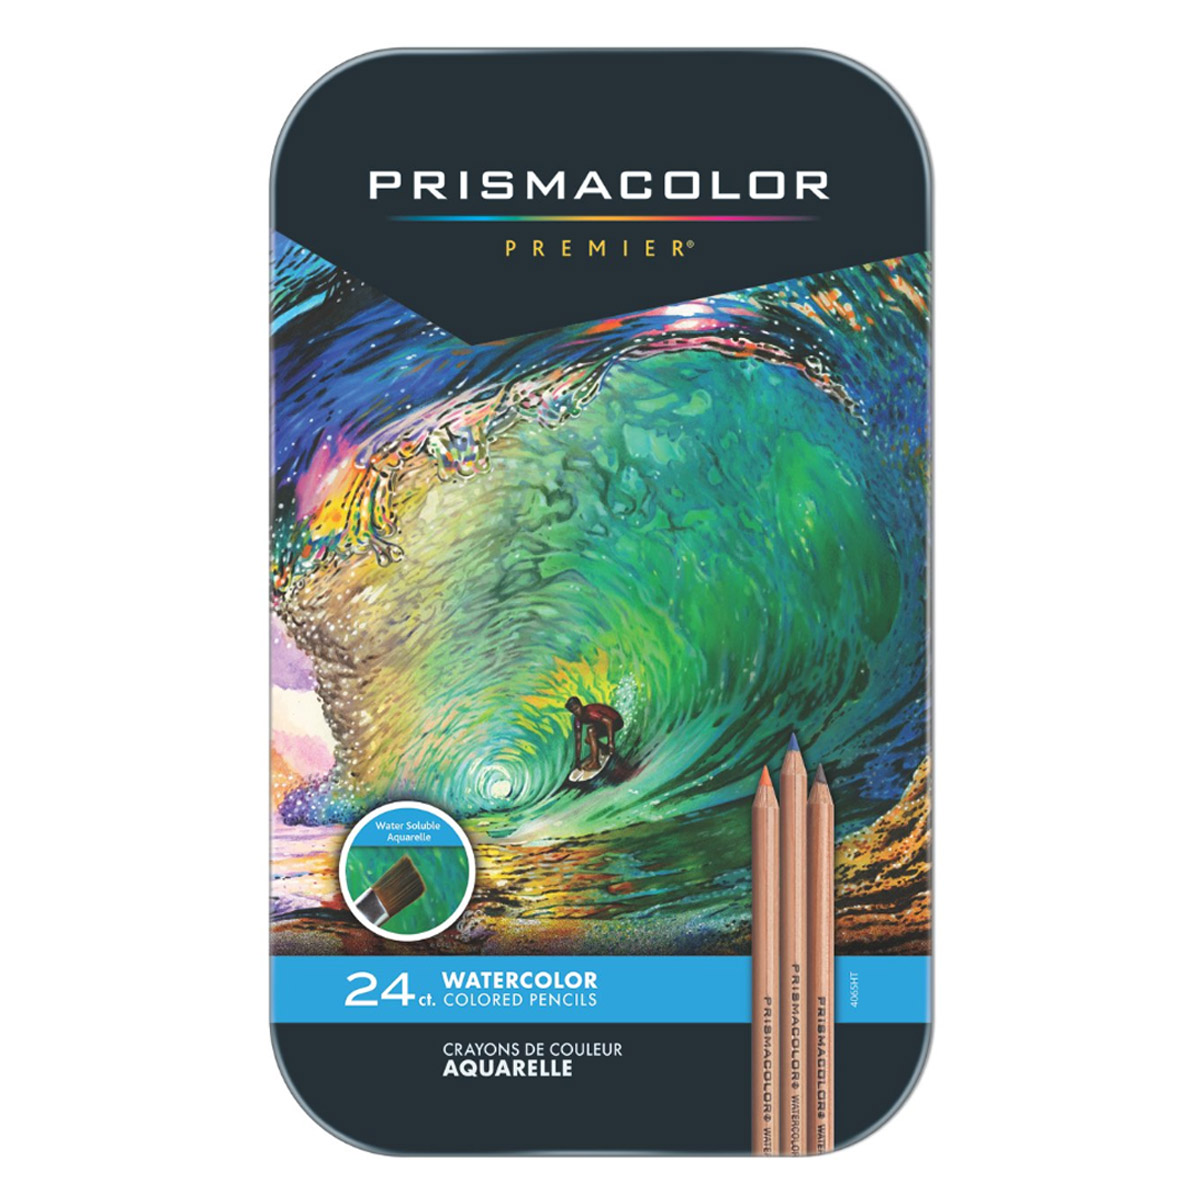 Prismacolor Premiere Watercolour Pencil Set of 24